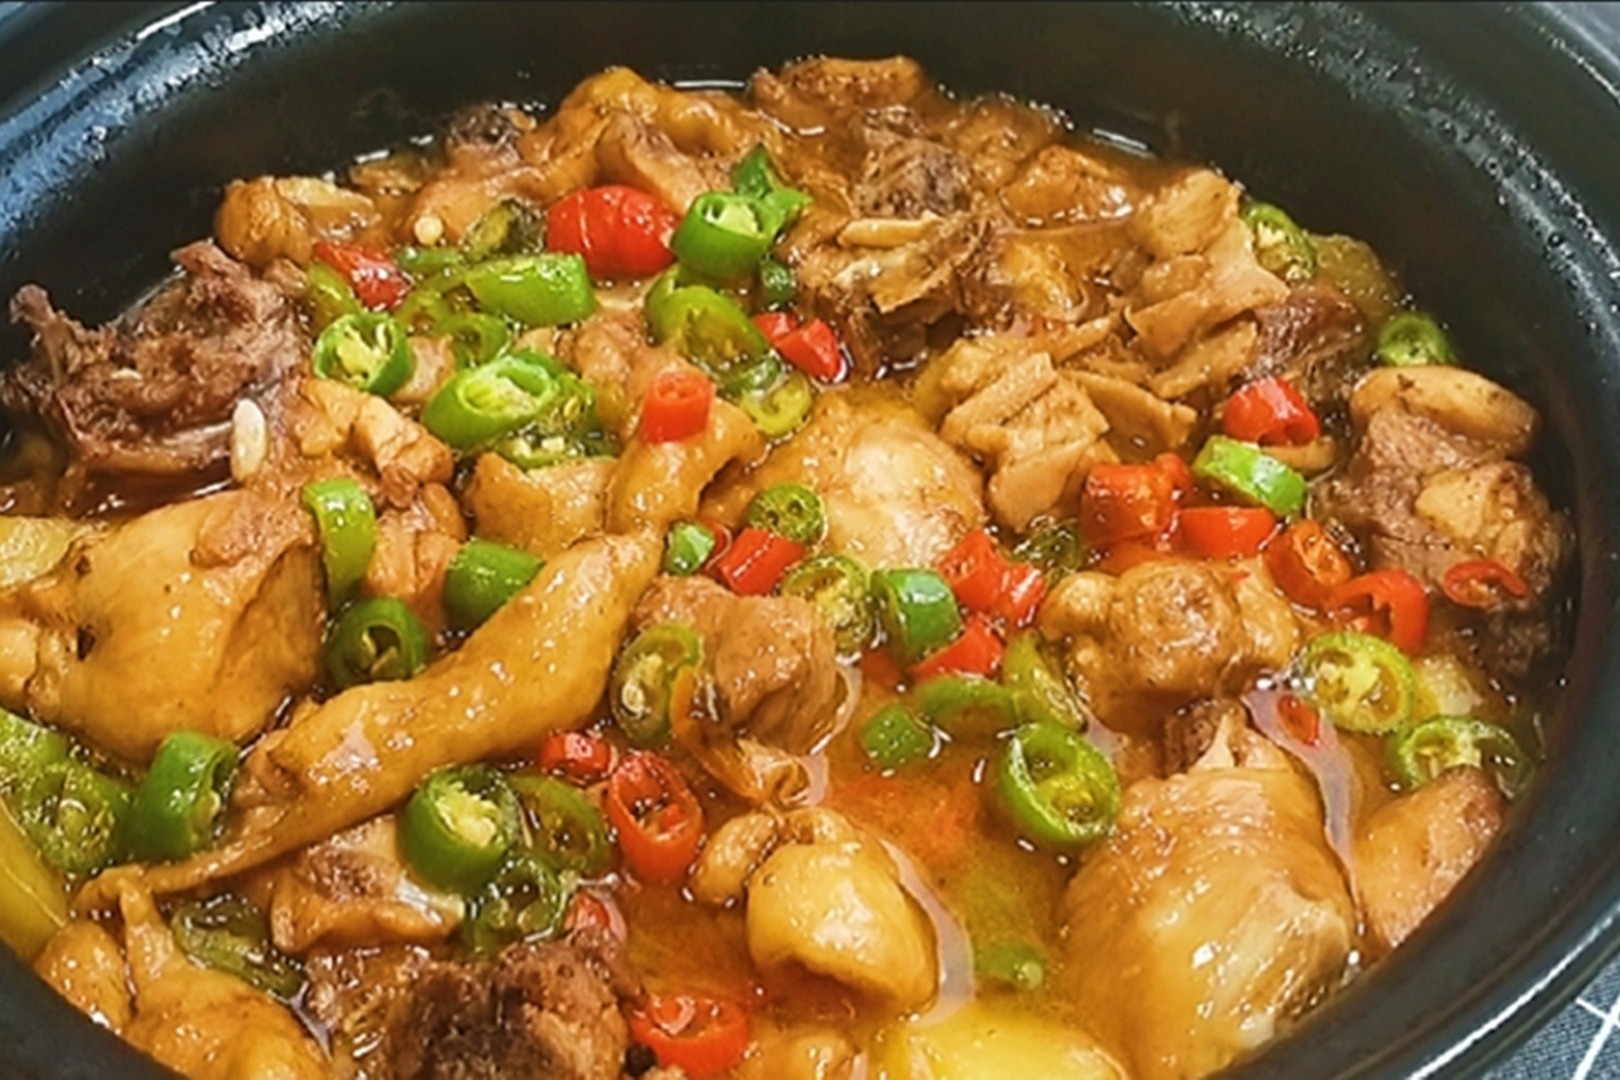 鸡肉用砂锅炖鲜嫩入味软滑不柴汤汁浓稠可以浇面条浇米饭